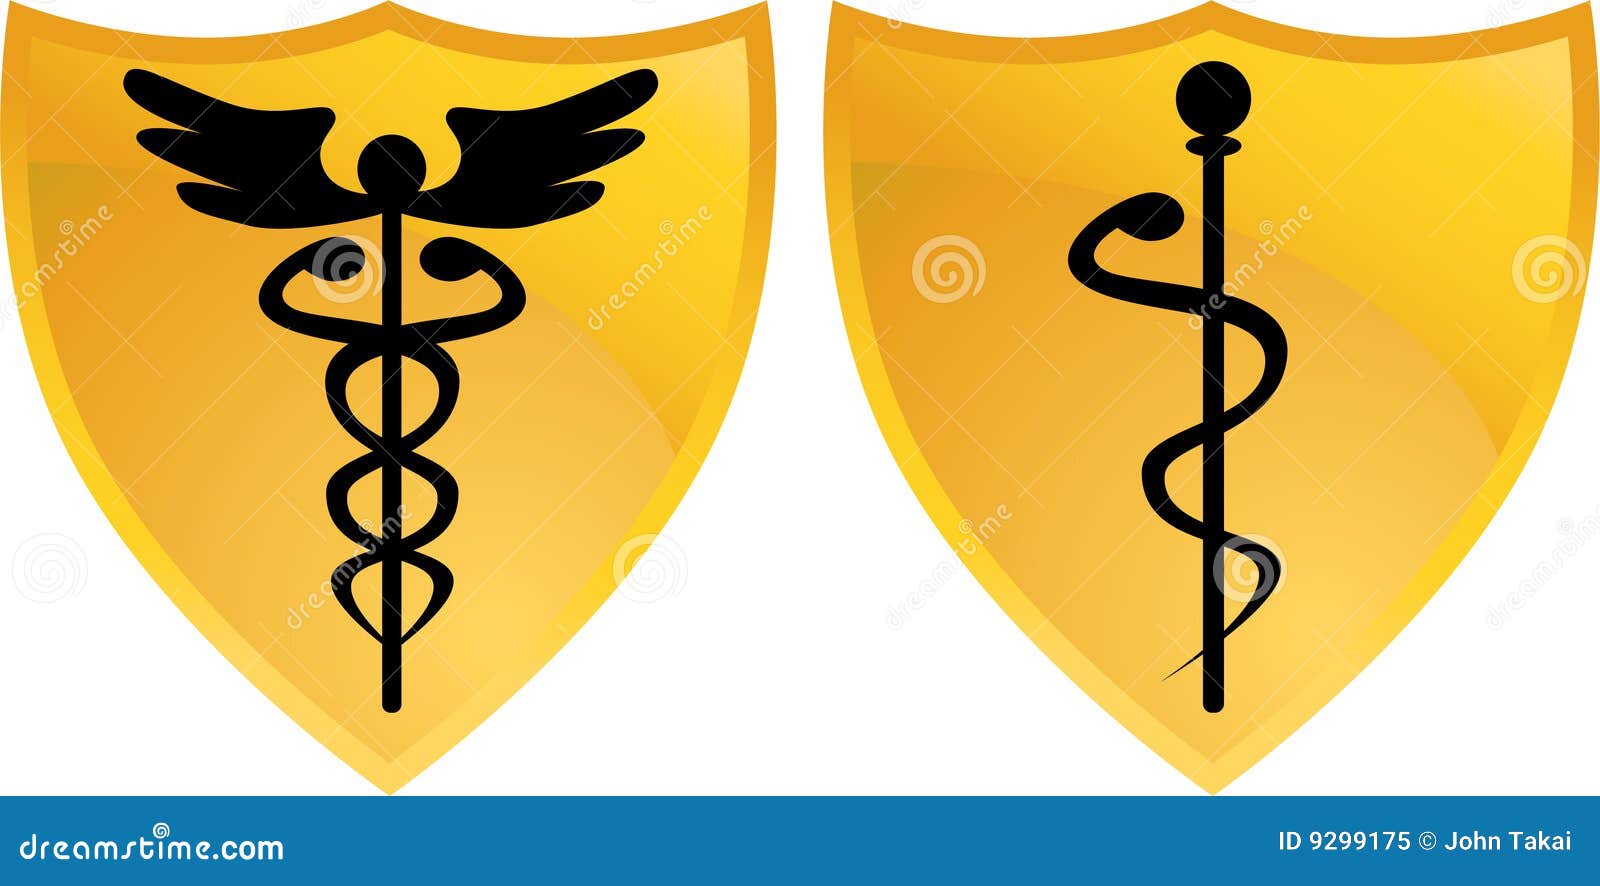 Caduceus Medical Symbol With Shields Cartoon Vector | CartoonDealer.com ...